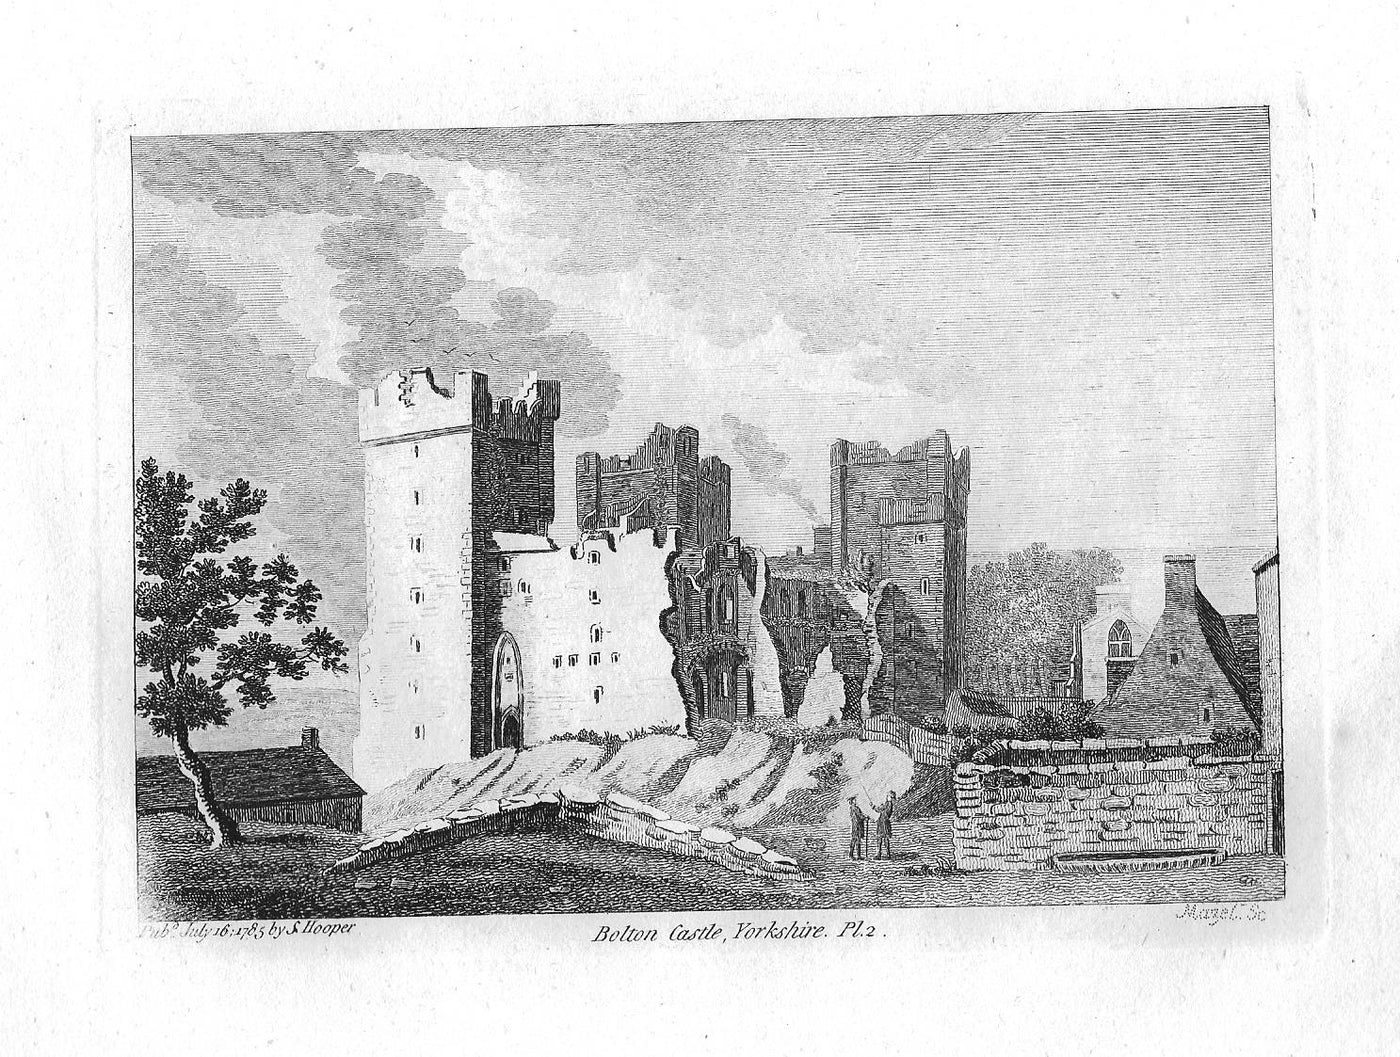 Bolton Castle Yorkshire antique print 1785